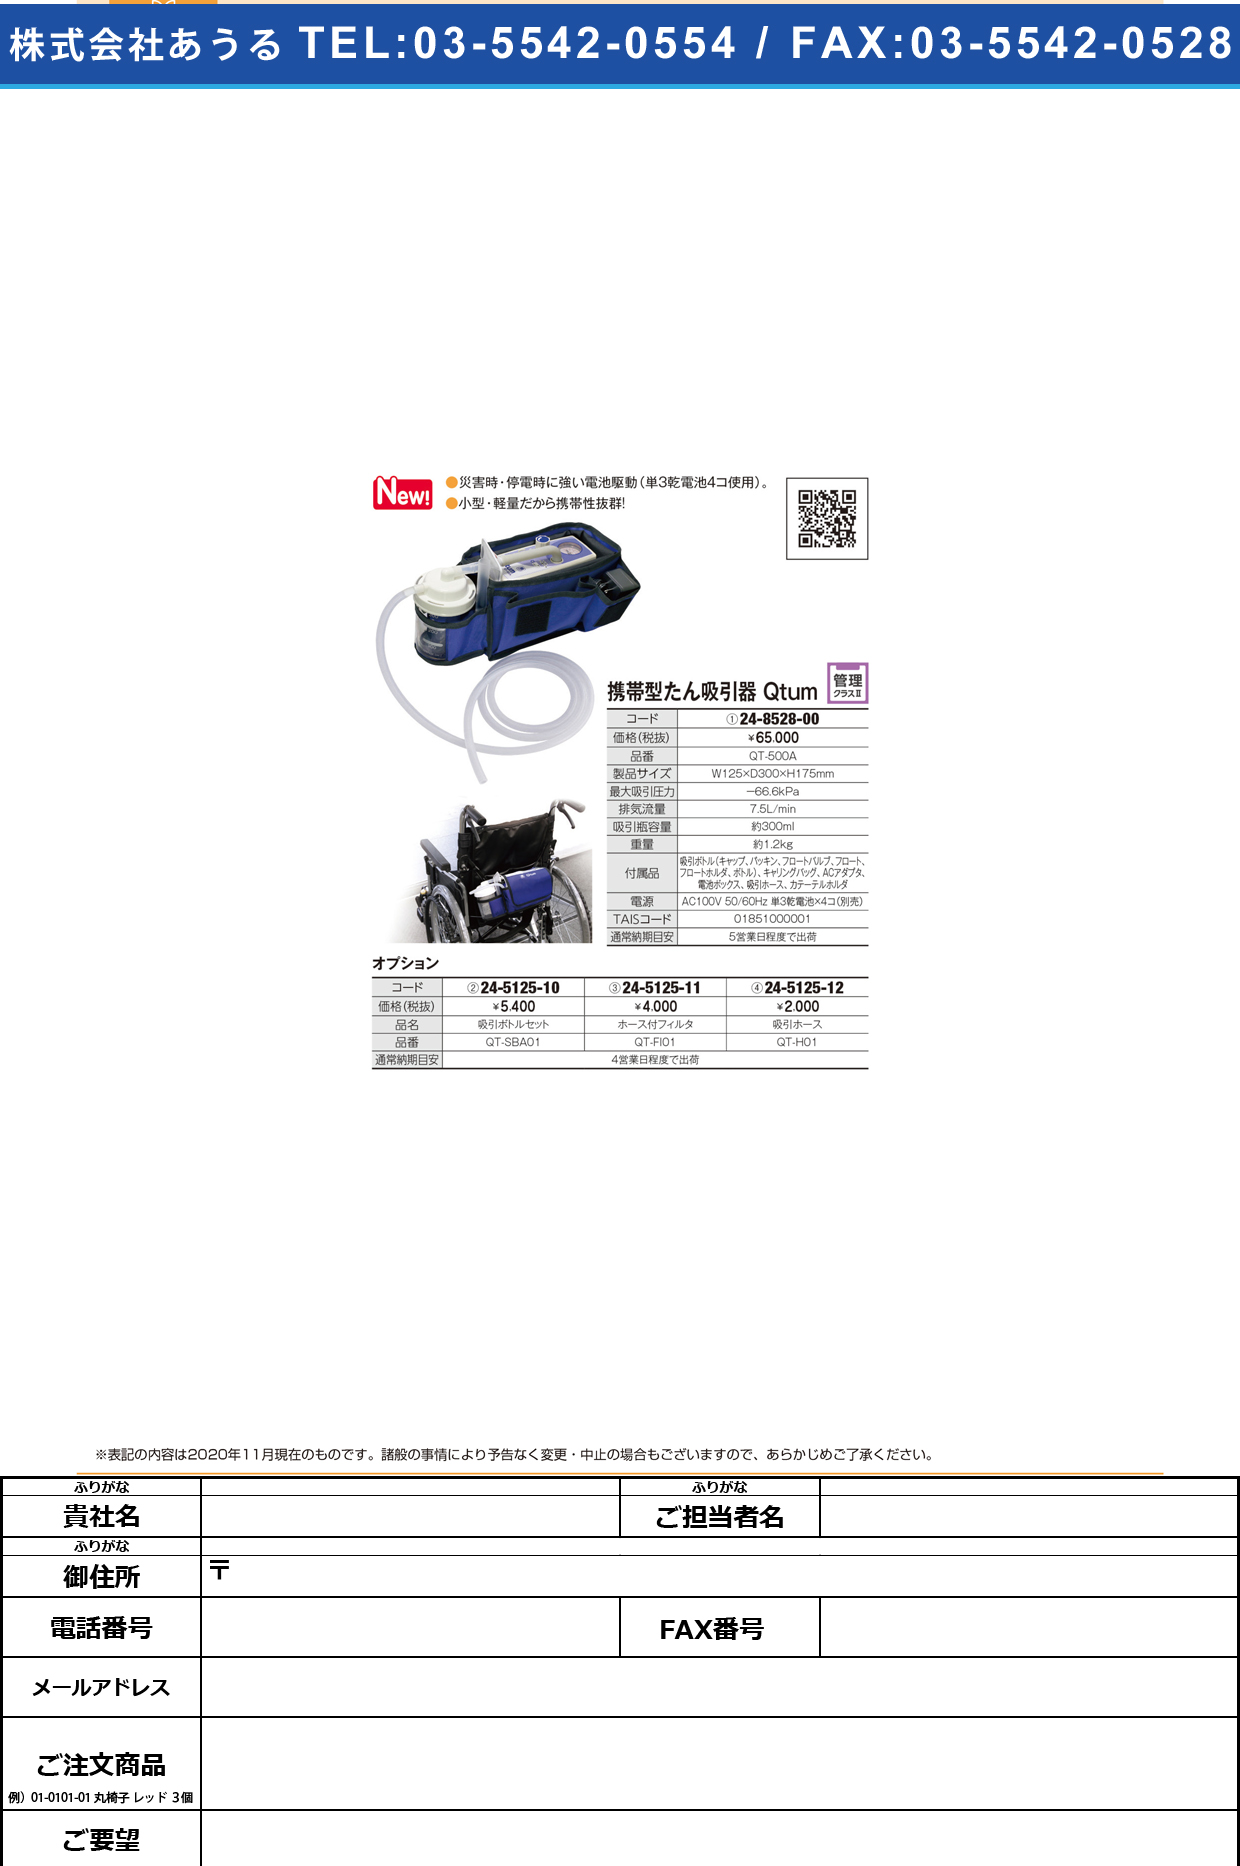 携帯型たん吸引器(Qtum) QT-500AQT-500A(24-8528-00)【日本メディックス】(販売単位:1)